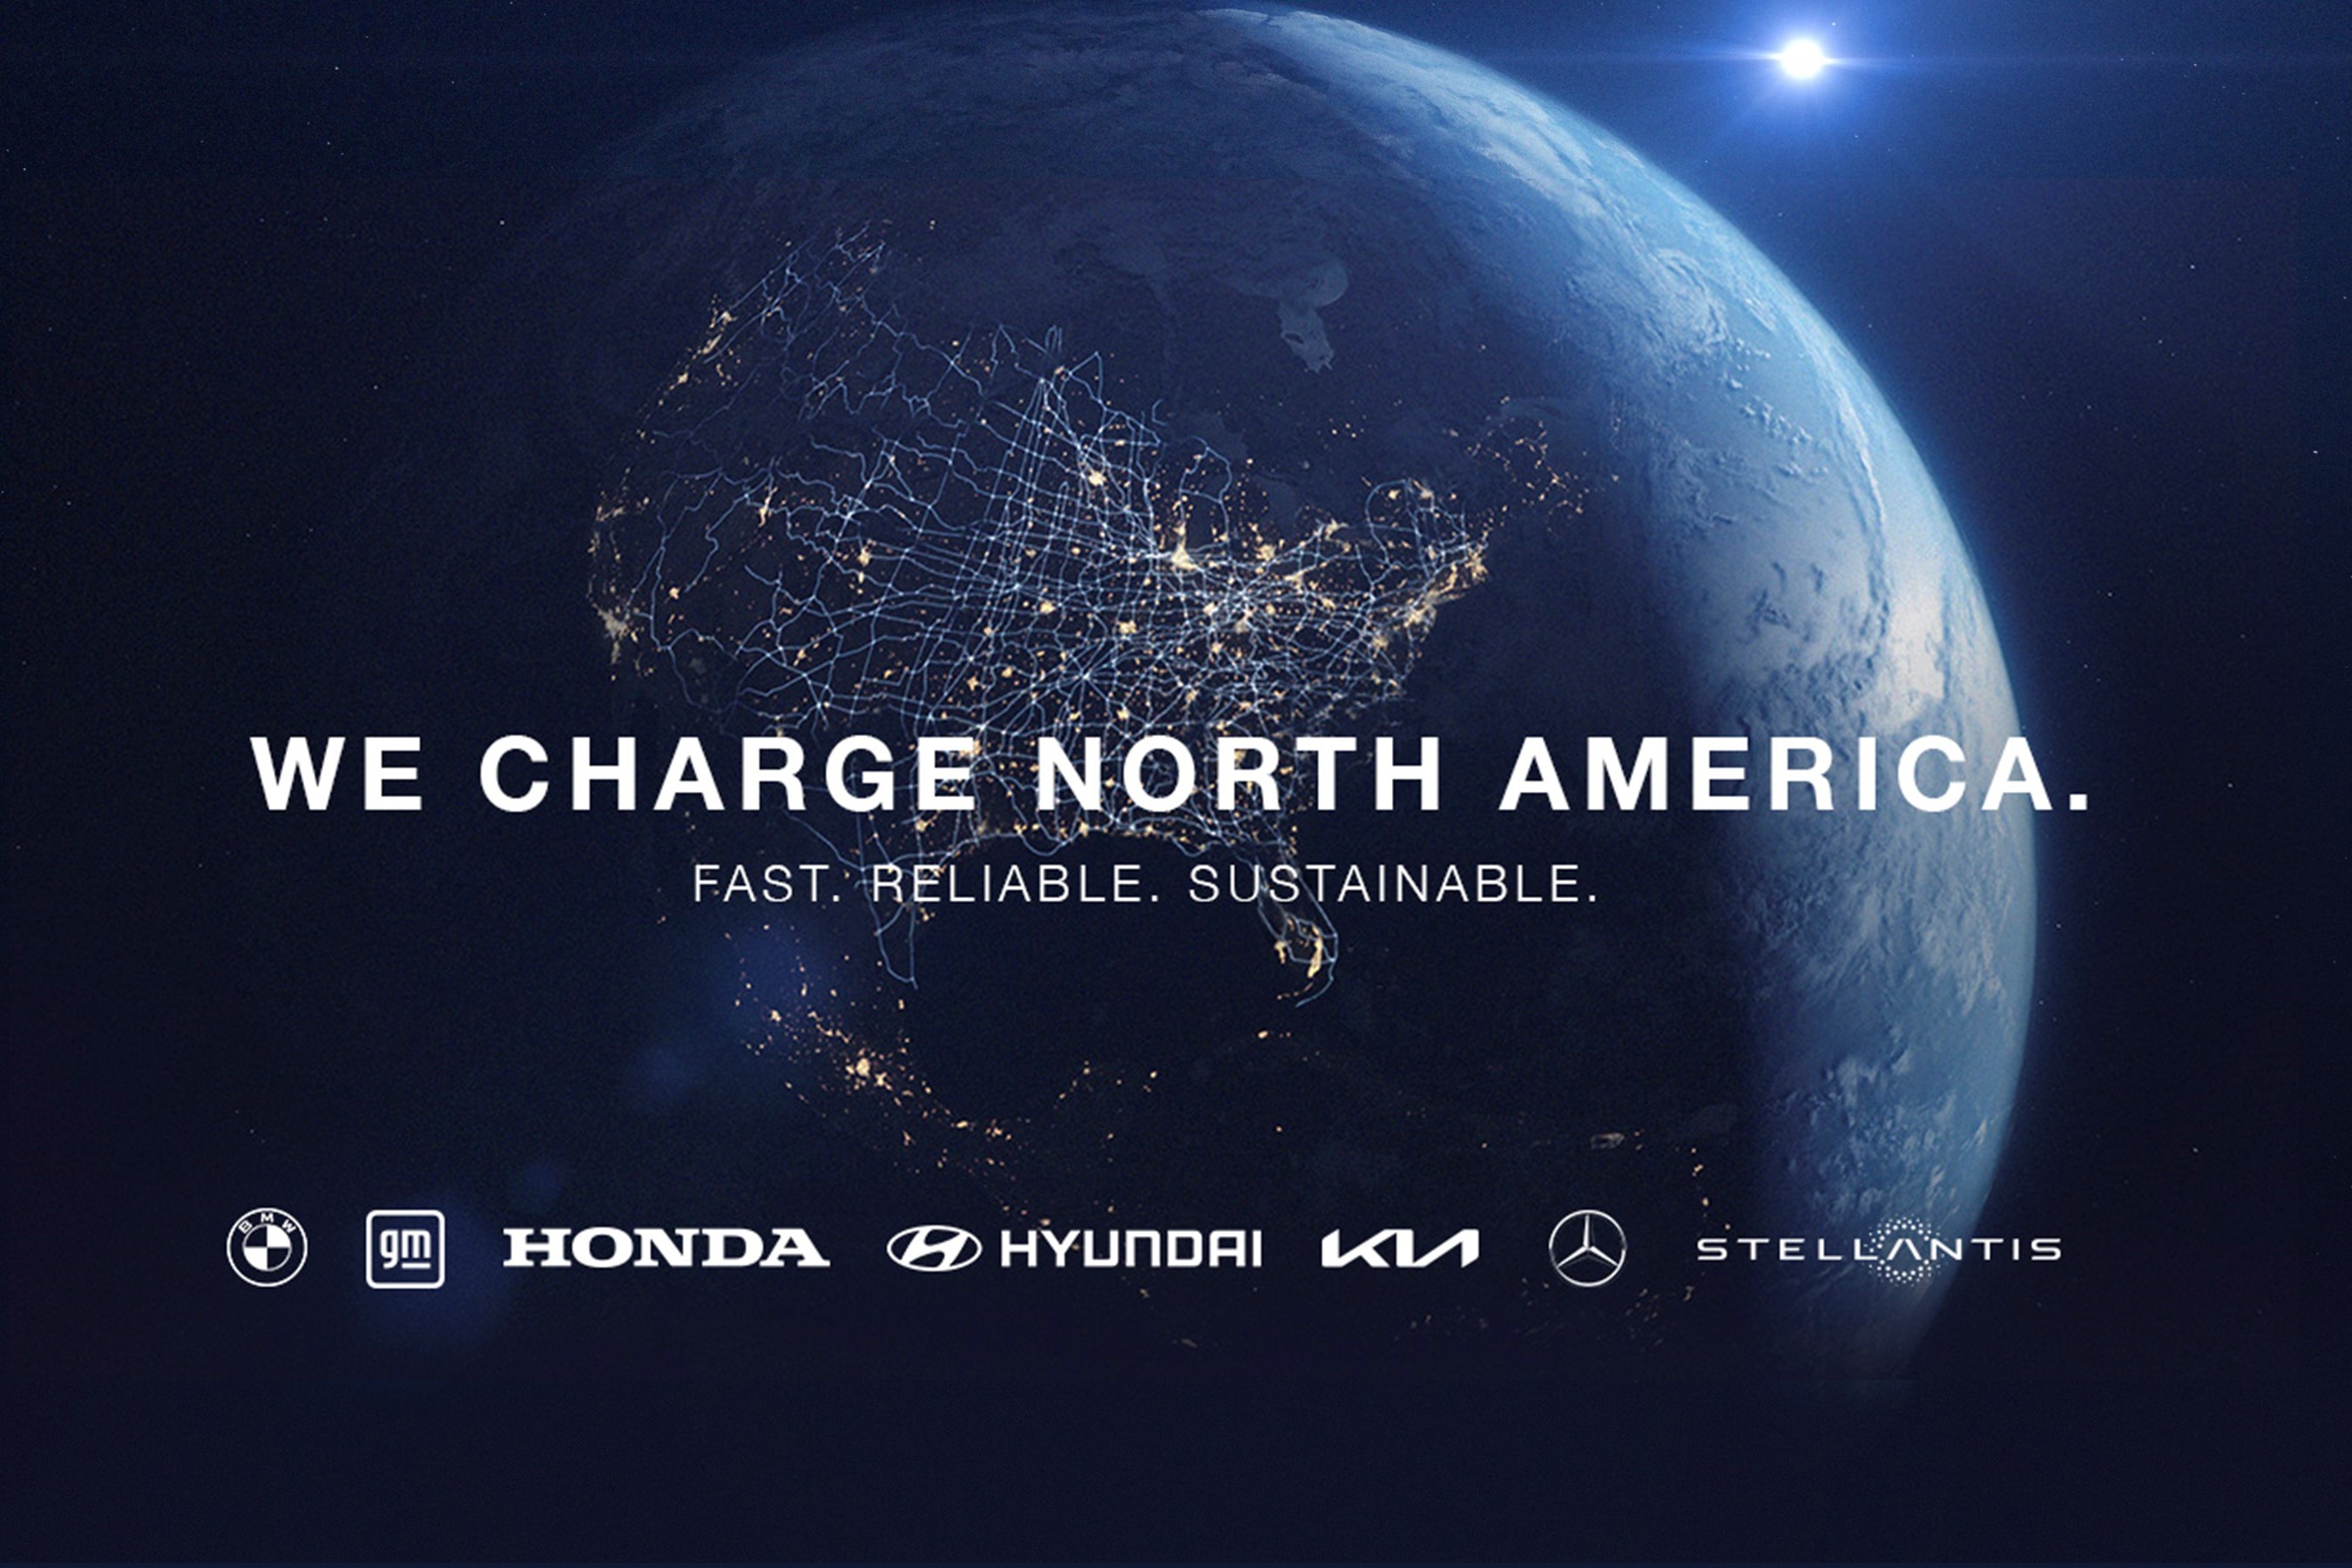 Новая сеть зарядки электромобилей Ionna готова развернуть 30 000 станций по всей Северной Америке